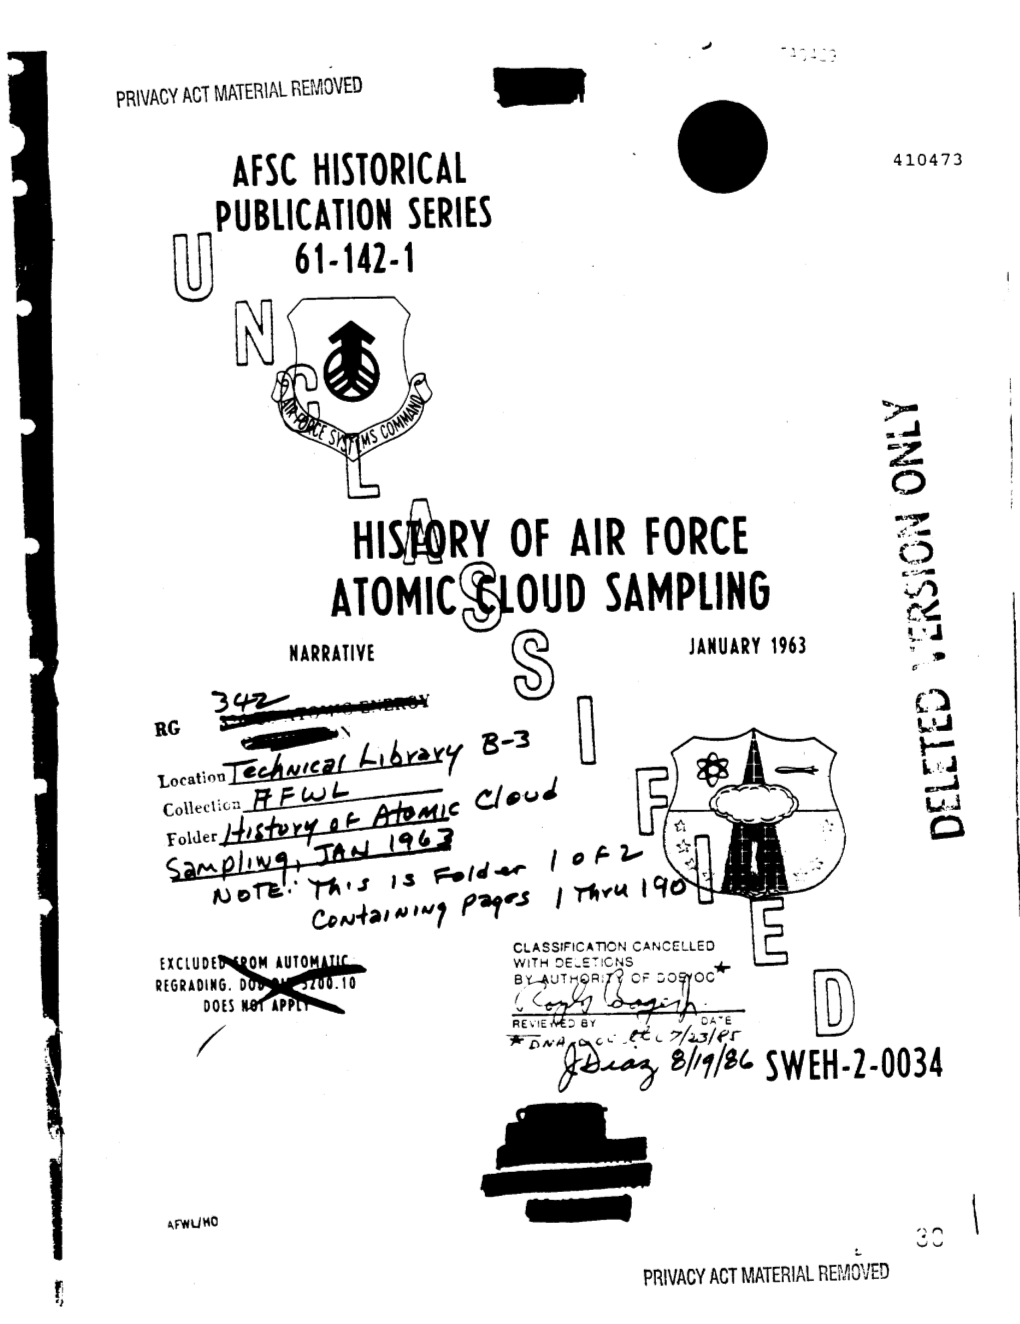 History of Air Force Atomic Cloud Sampling